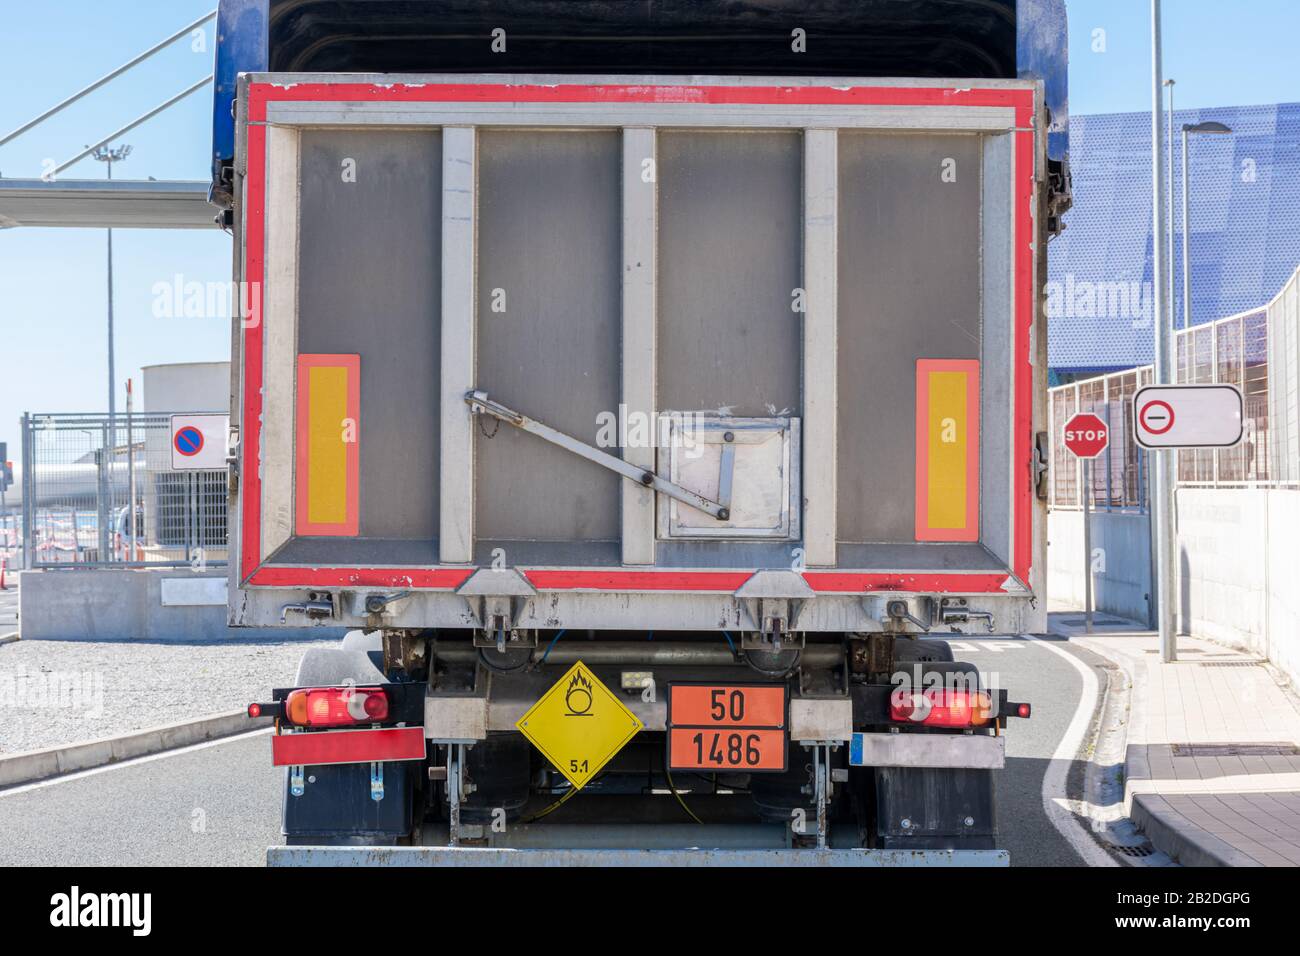 Vista posteriore di un carrello con targhe per merci pericolose con numeri di identificazione del pericolo, solidi ossidanti, fertilizzanti. Foto Stock